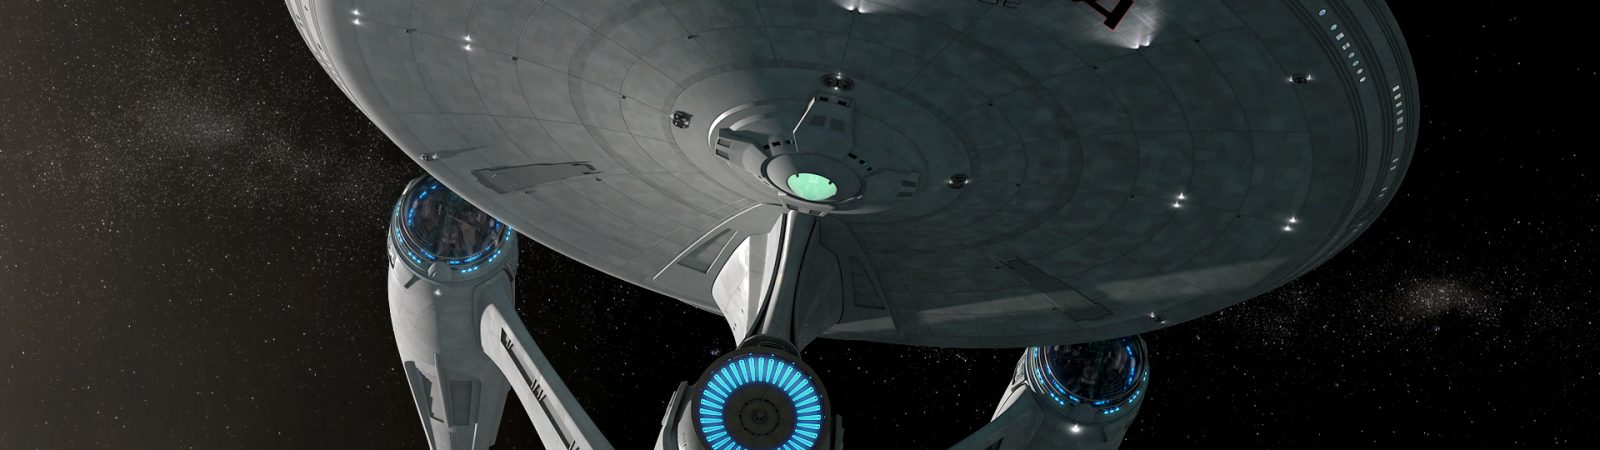 Enterprise-A downloads